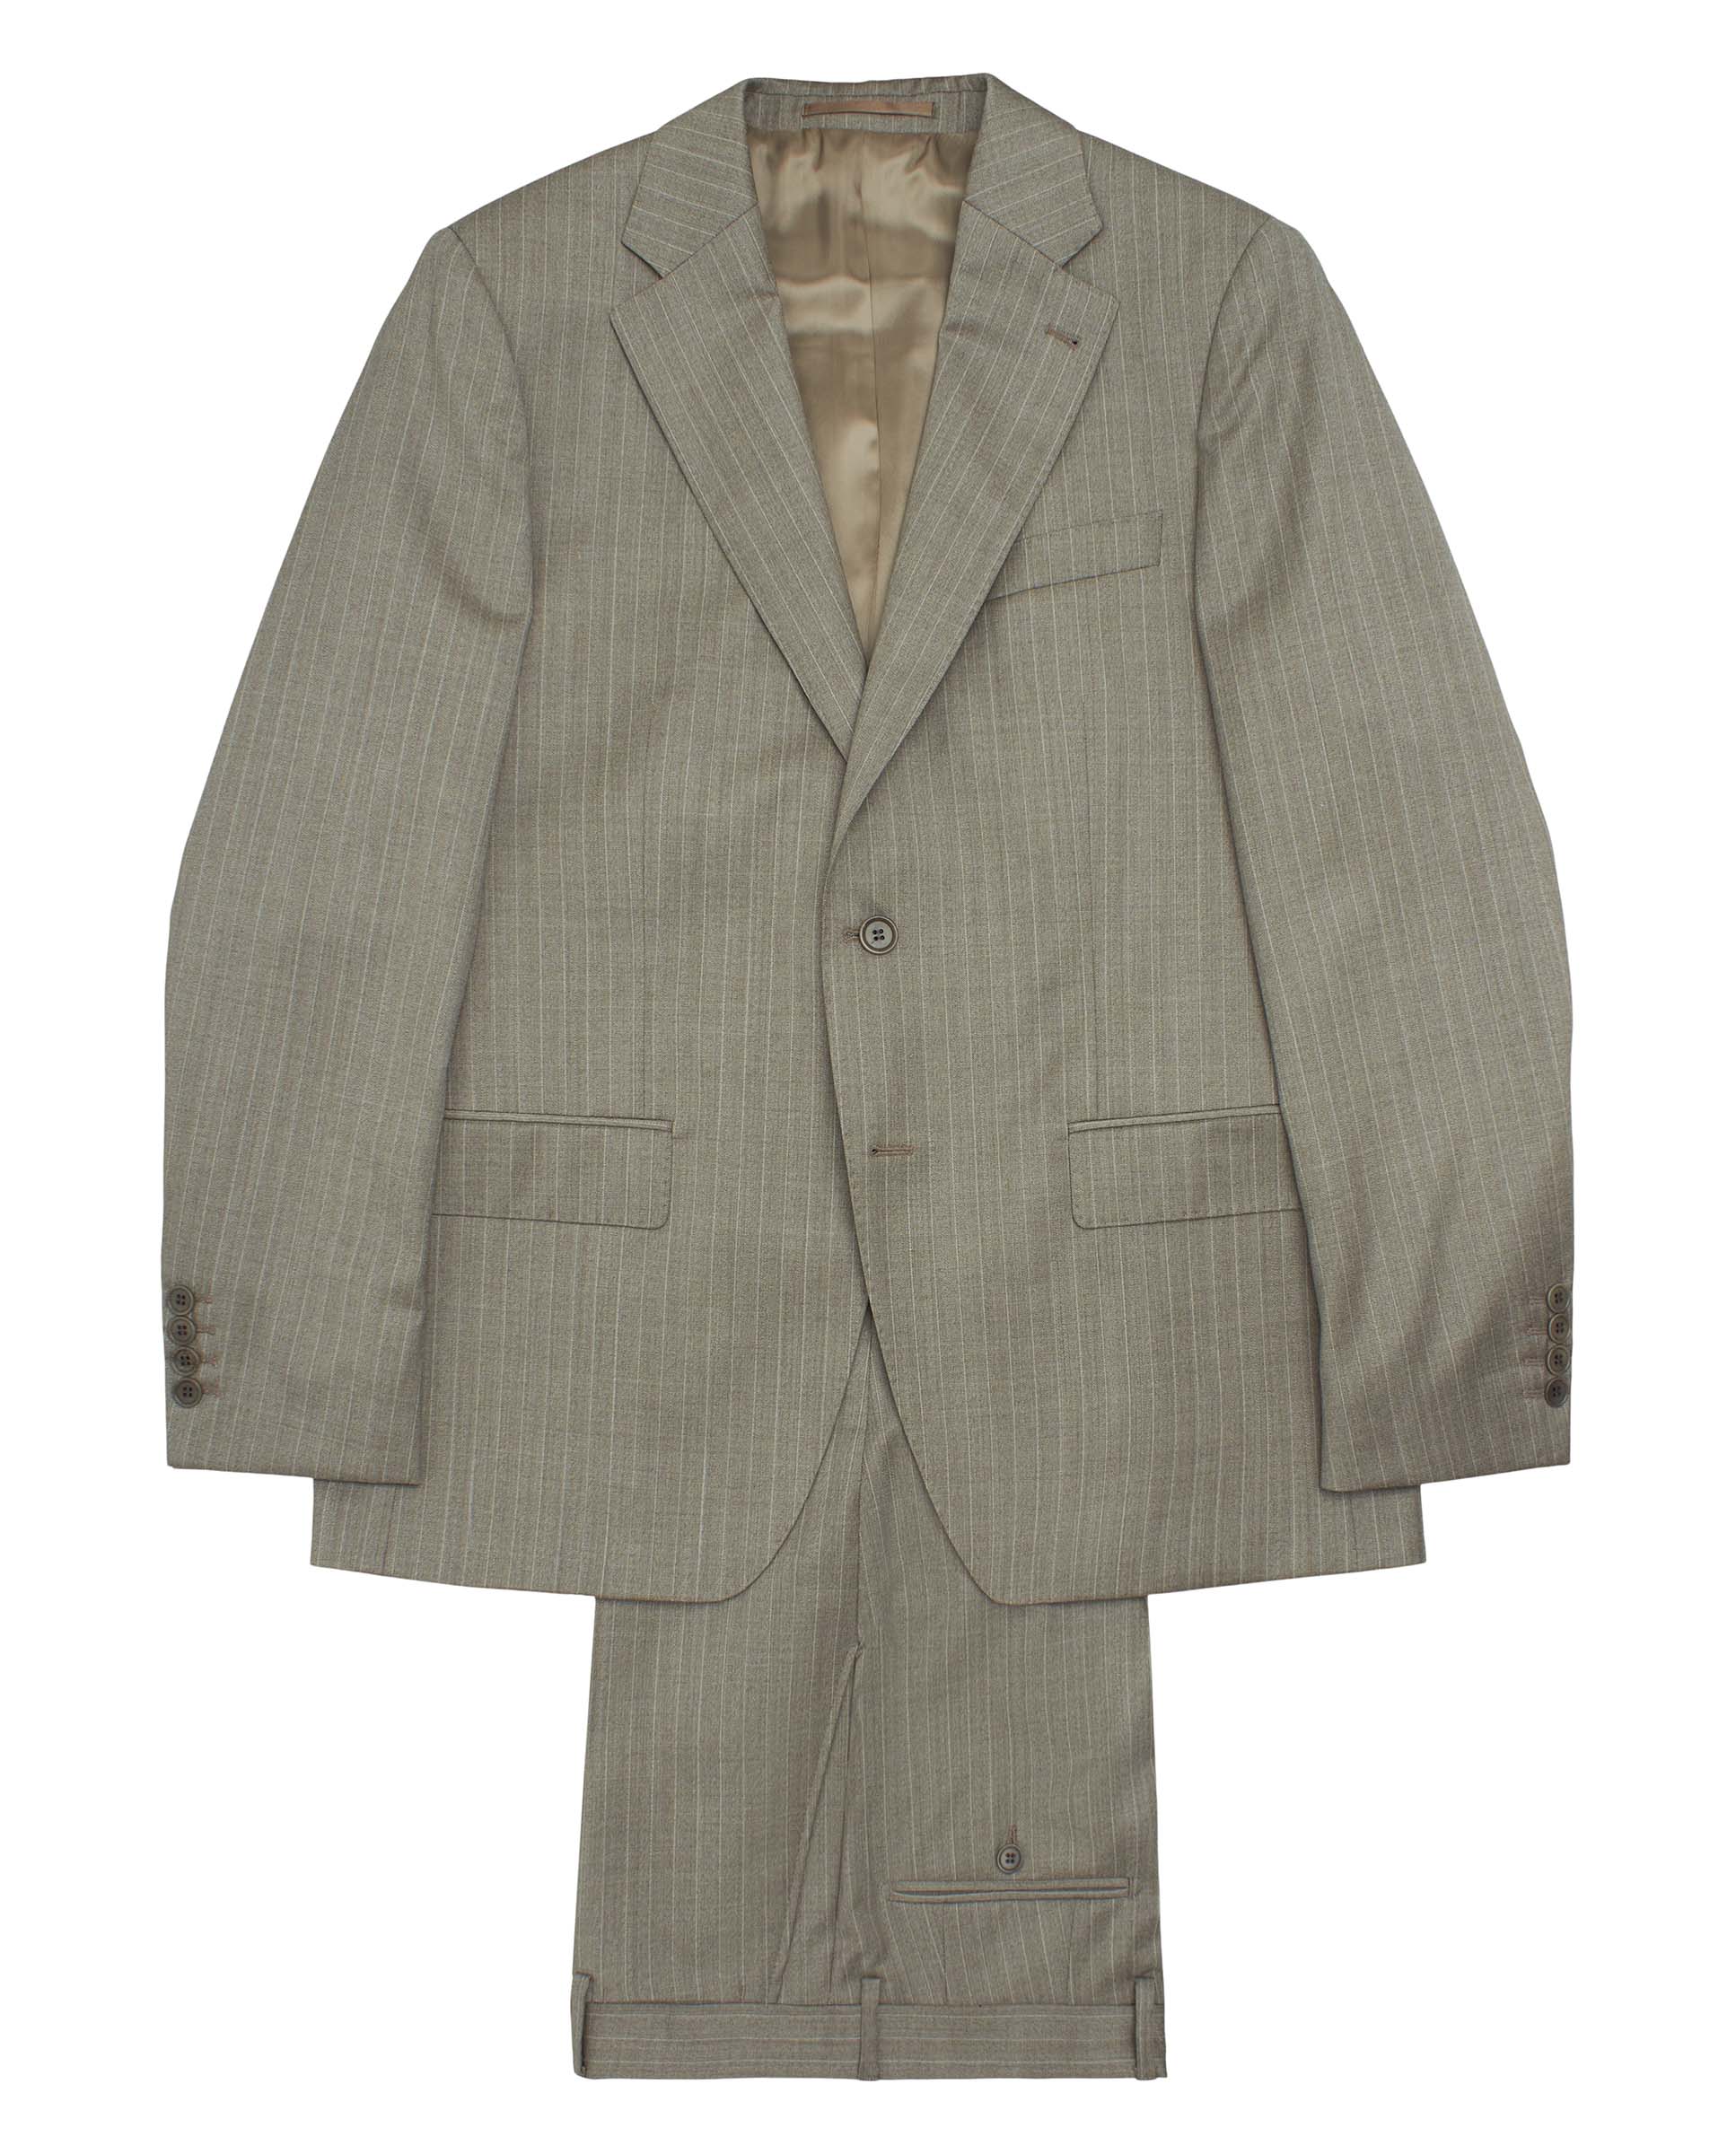 Beige pin stripe wool suit by MIRTO